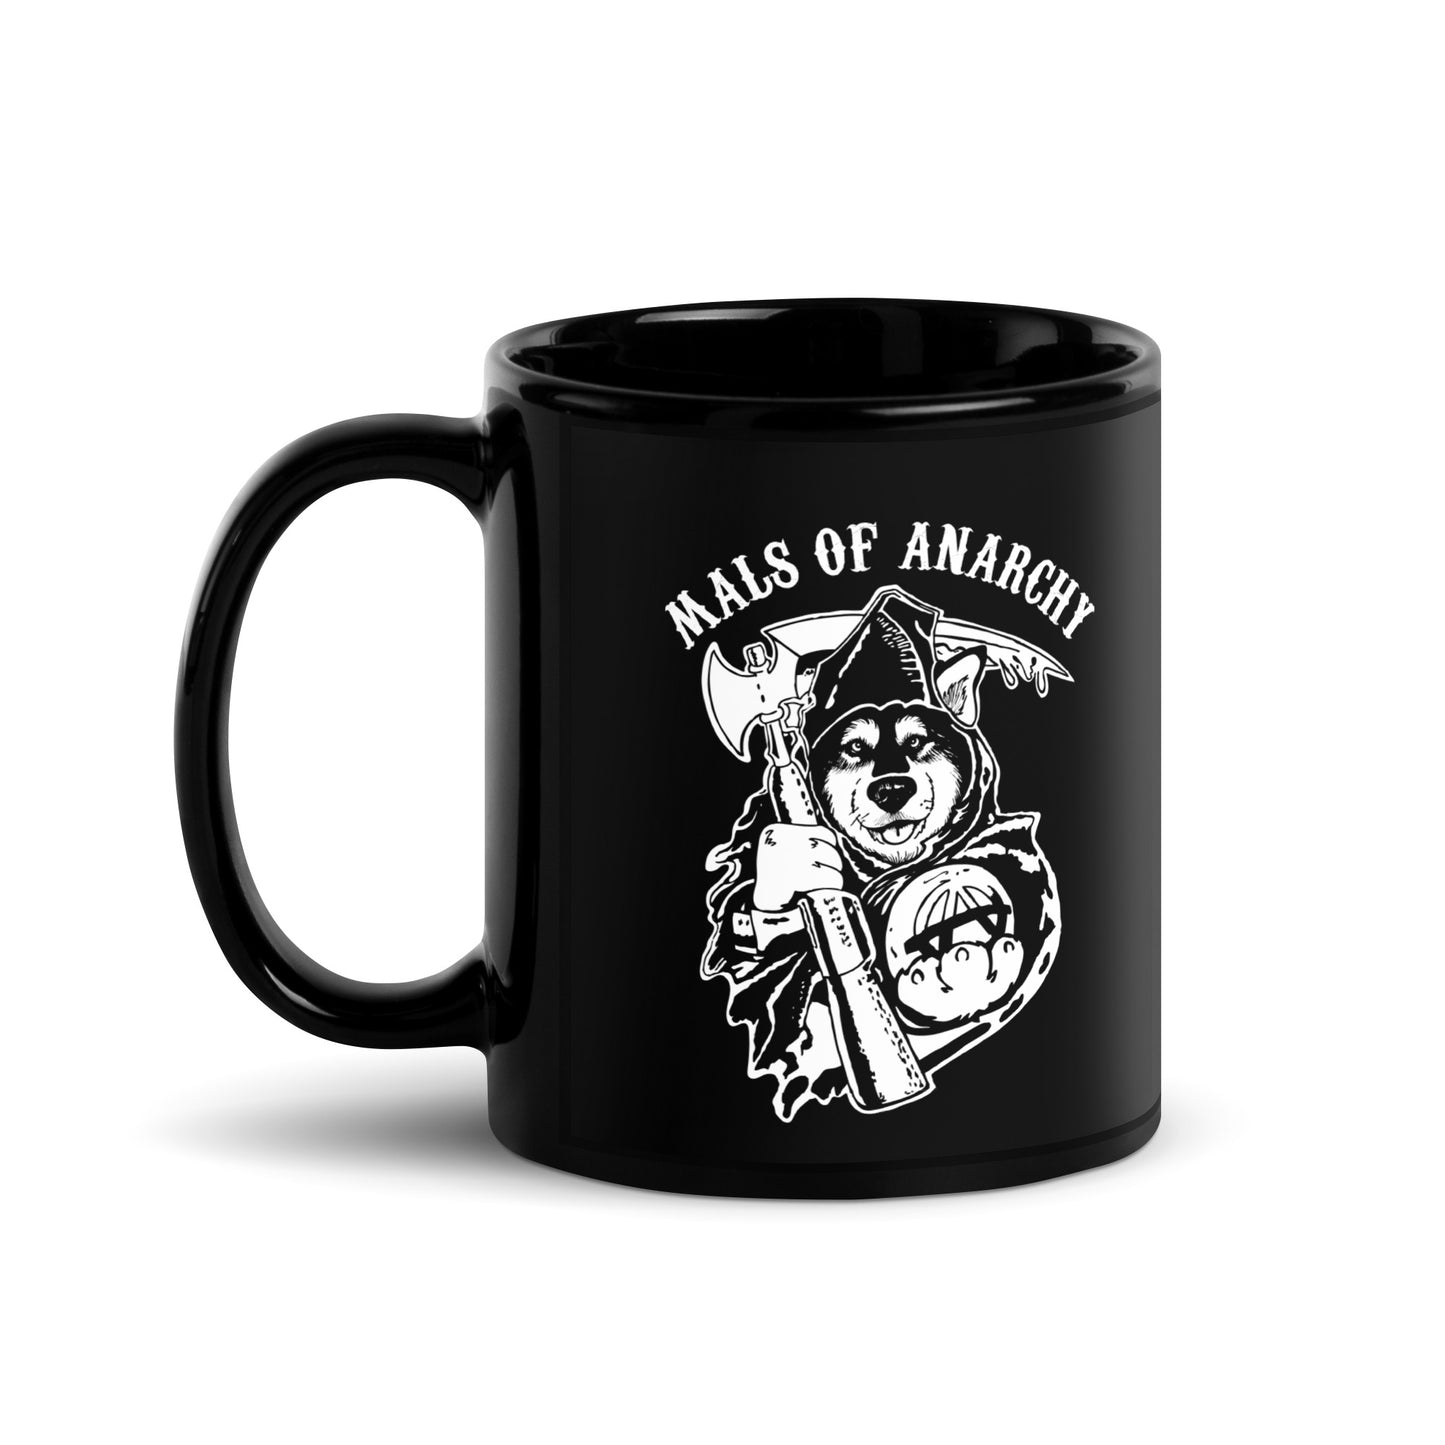 Mals of Anarchy - Coffee Mug